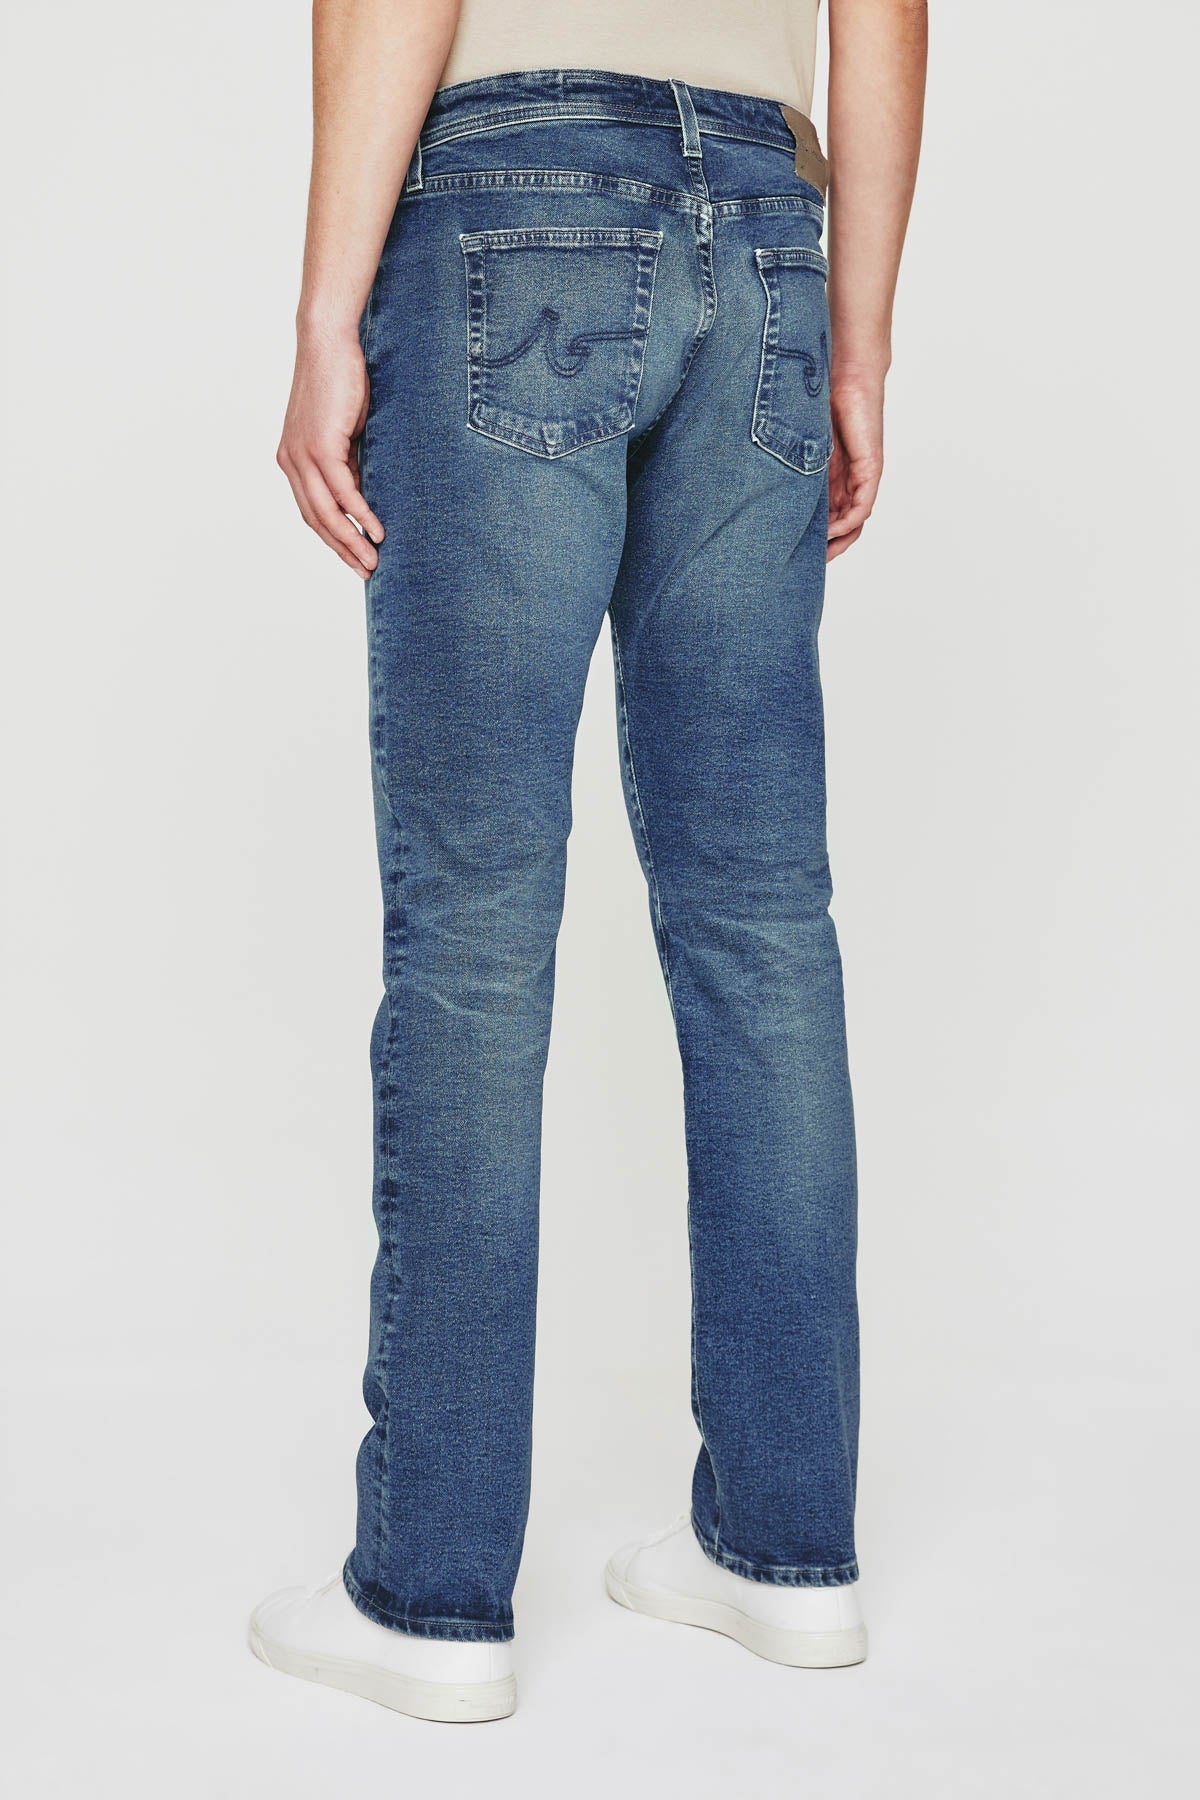 Tellis Modern Slim Jean - AG Jeans - Danali - 1783CCS-15YBRO-30